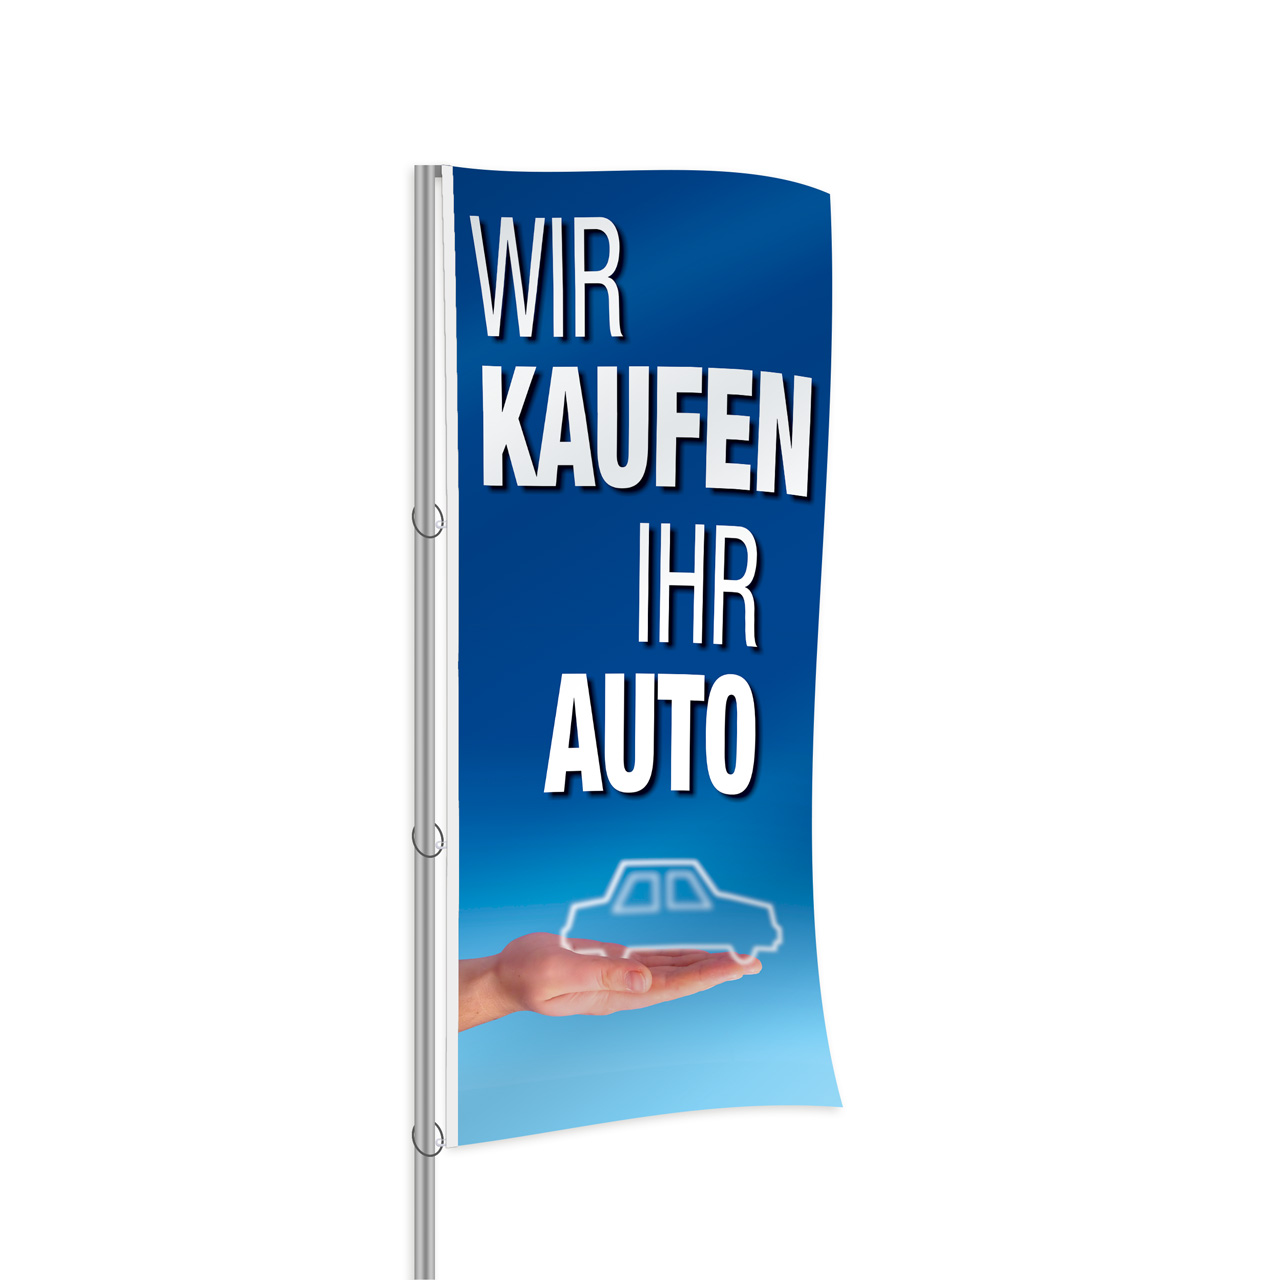 EUFAB Auto-Fahne Deutschland Fanartikel für Autoscheibe, 0,90 €